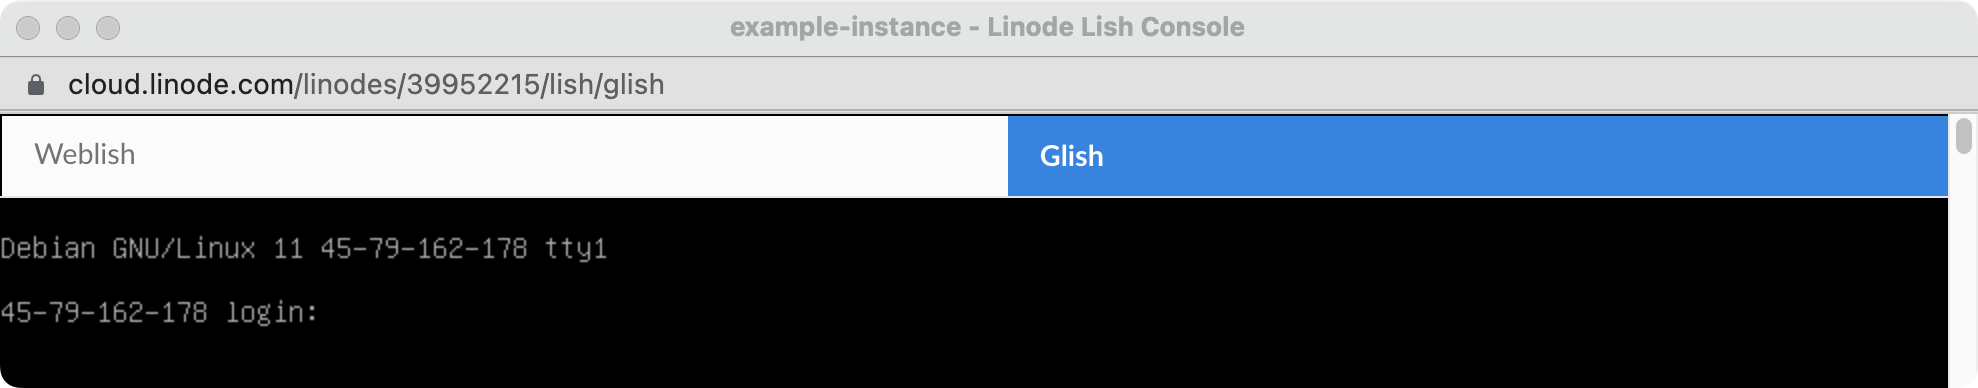 Glish Console Prompt